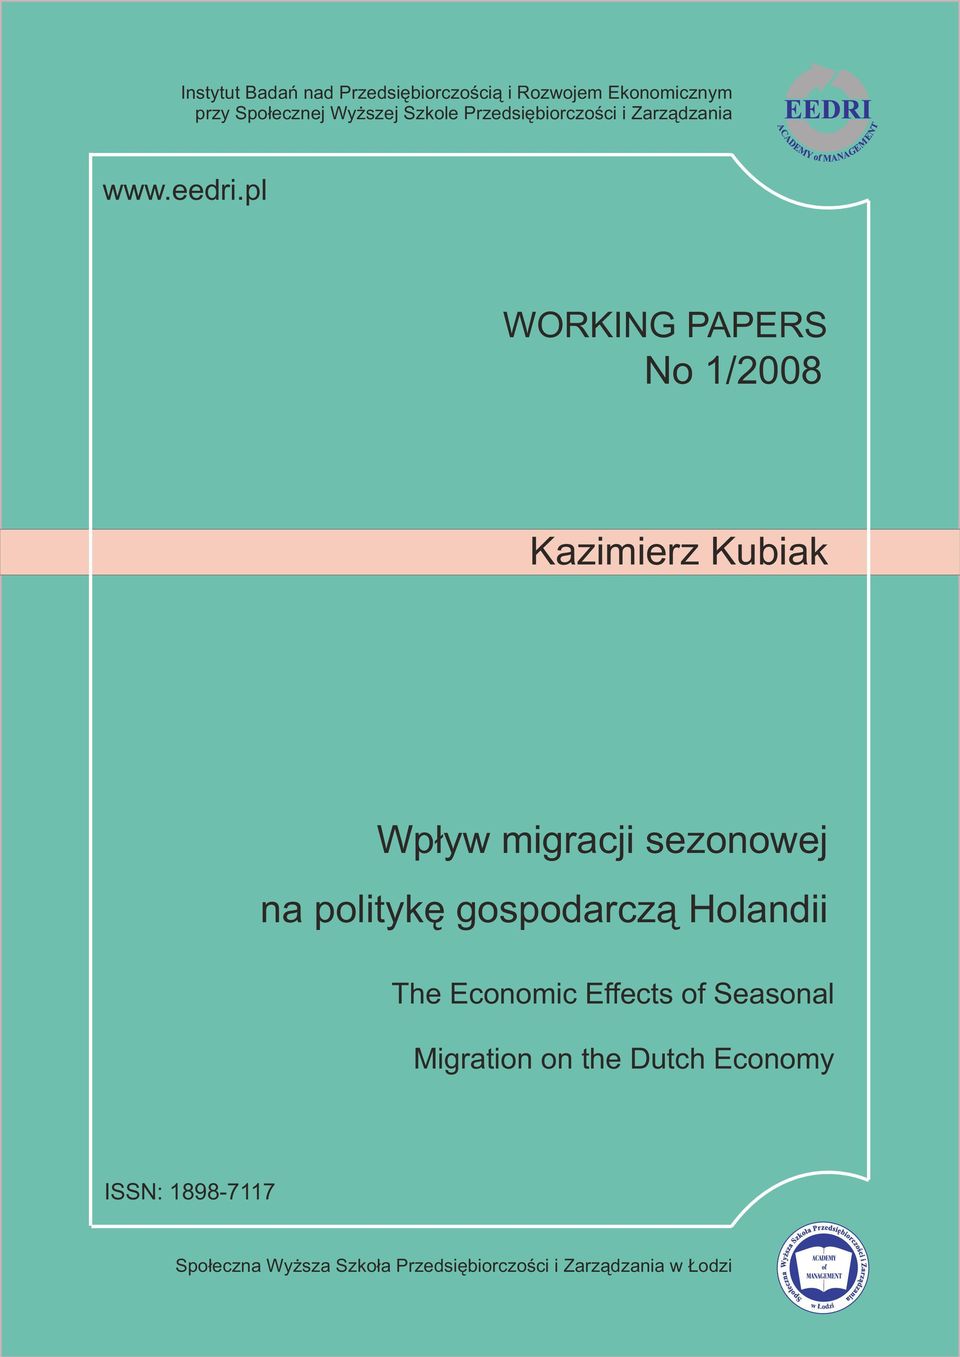 pl WORKING PAPERS No 1/2008 Kazimierz Kubiak Wp³yw migracji sezonowej na politykê gospodarcz¹